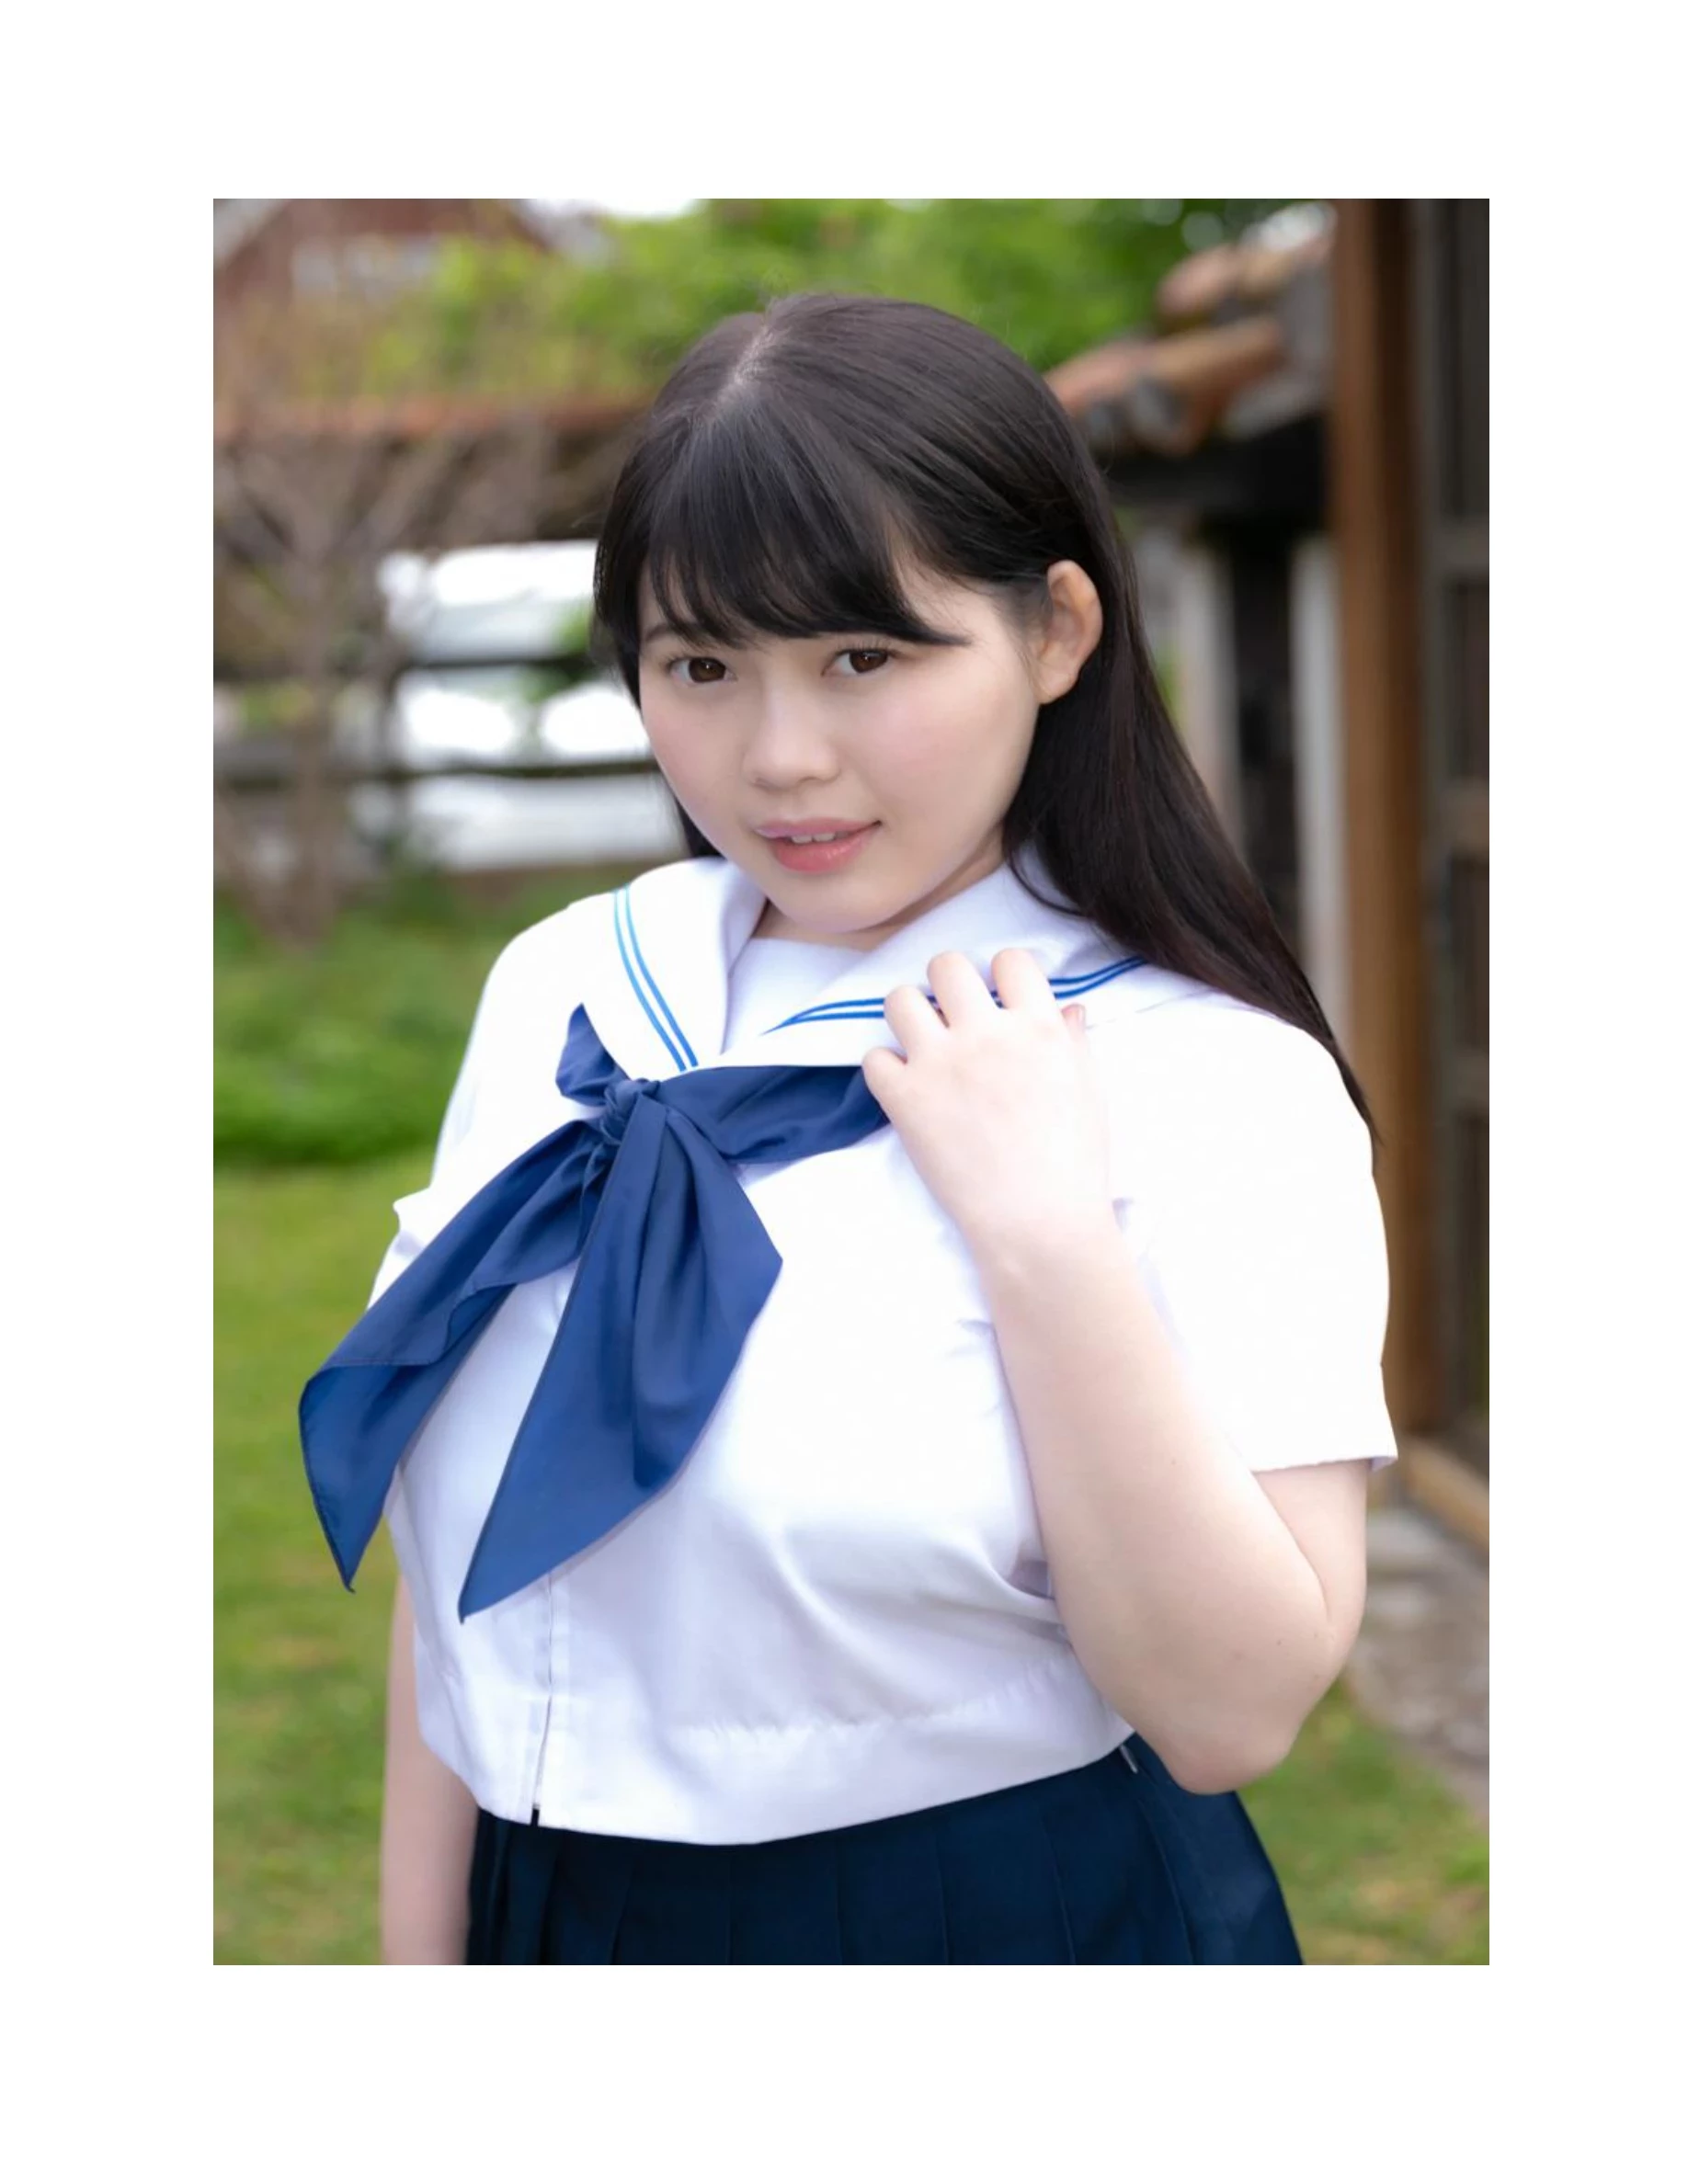 伊川愛梨 卒業旅行 夏 寫真集 J罩杯偶像美少女傳説-45